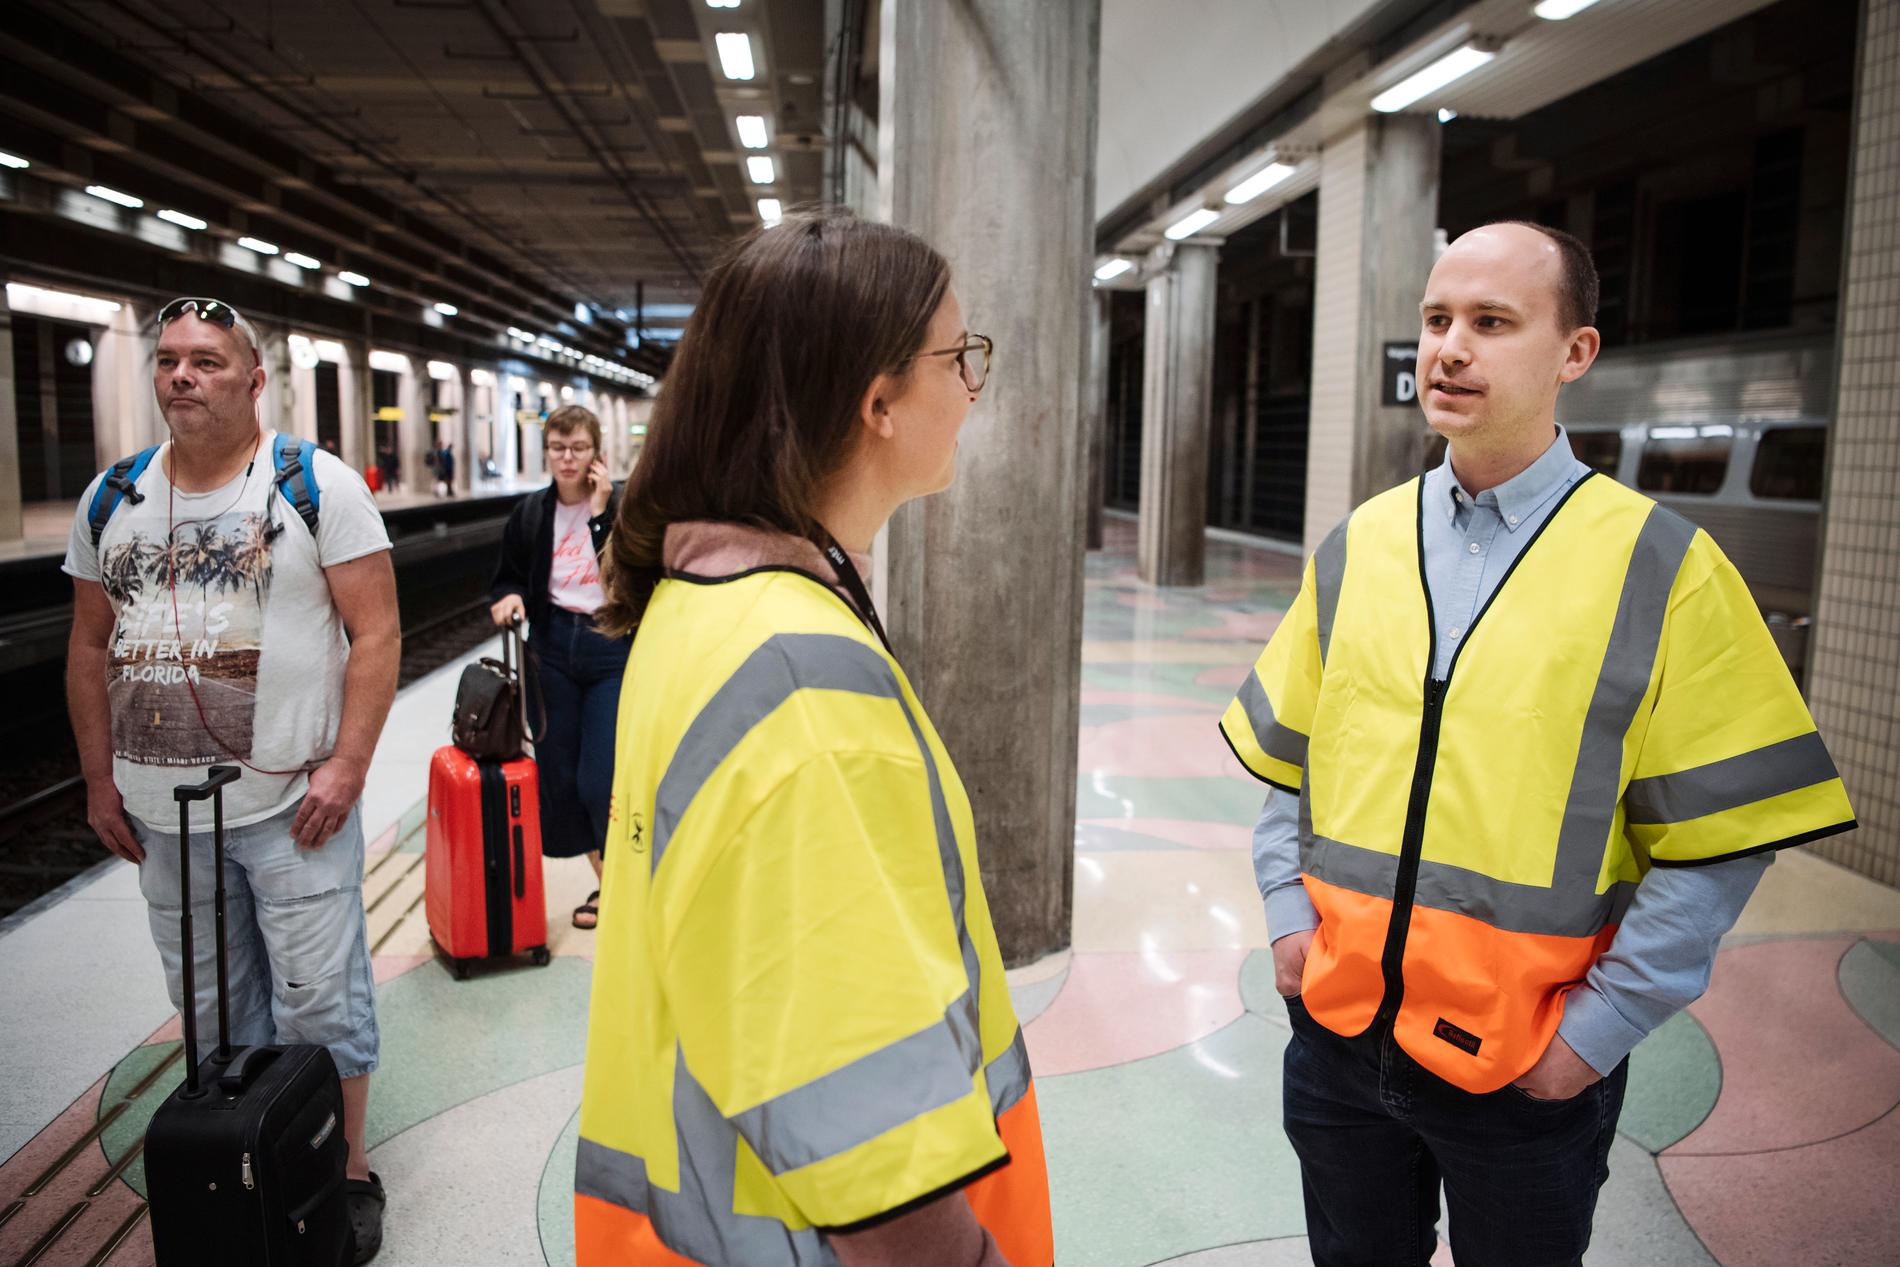 "Det handlar mest om ifall tåget går dit det ska och om det är försenat", säger Daniel Lock från MTR Express om resenärernas vanligaste frågor. I dag fanns han på plats på Södra station tillsammans med kollegan Anja Sandberg.